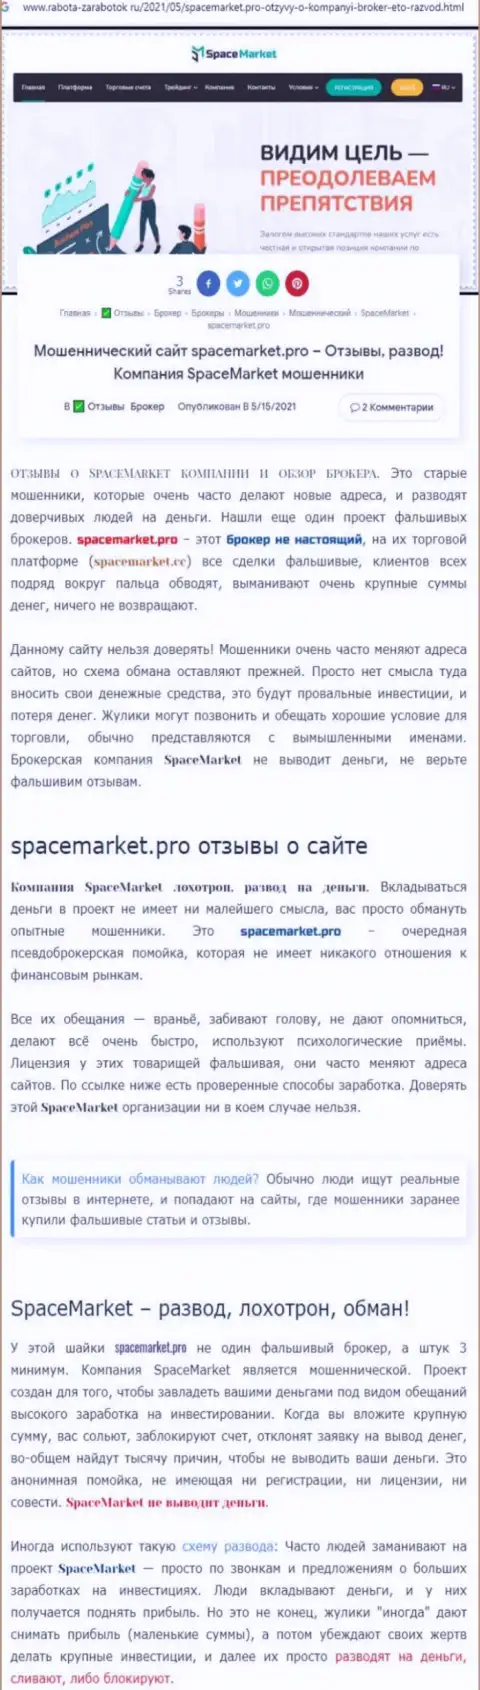 SpaceMarket Pro - это наглый разводянк реальных клиентов (статья с обзором противозаконных уловок)